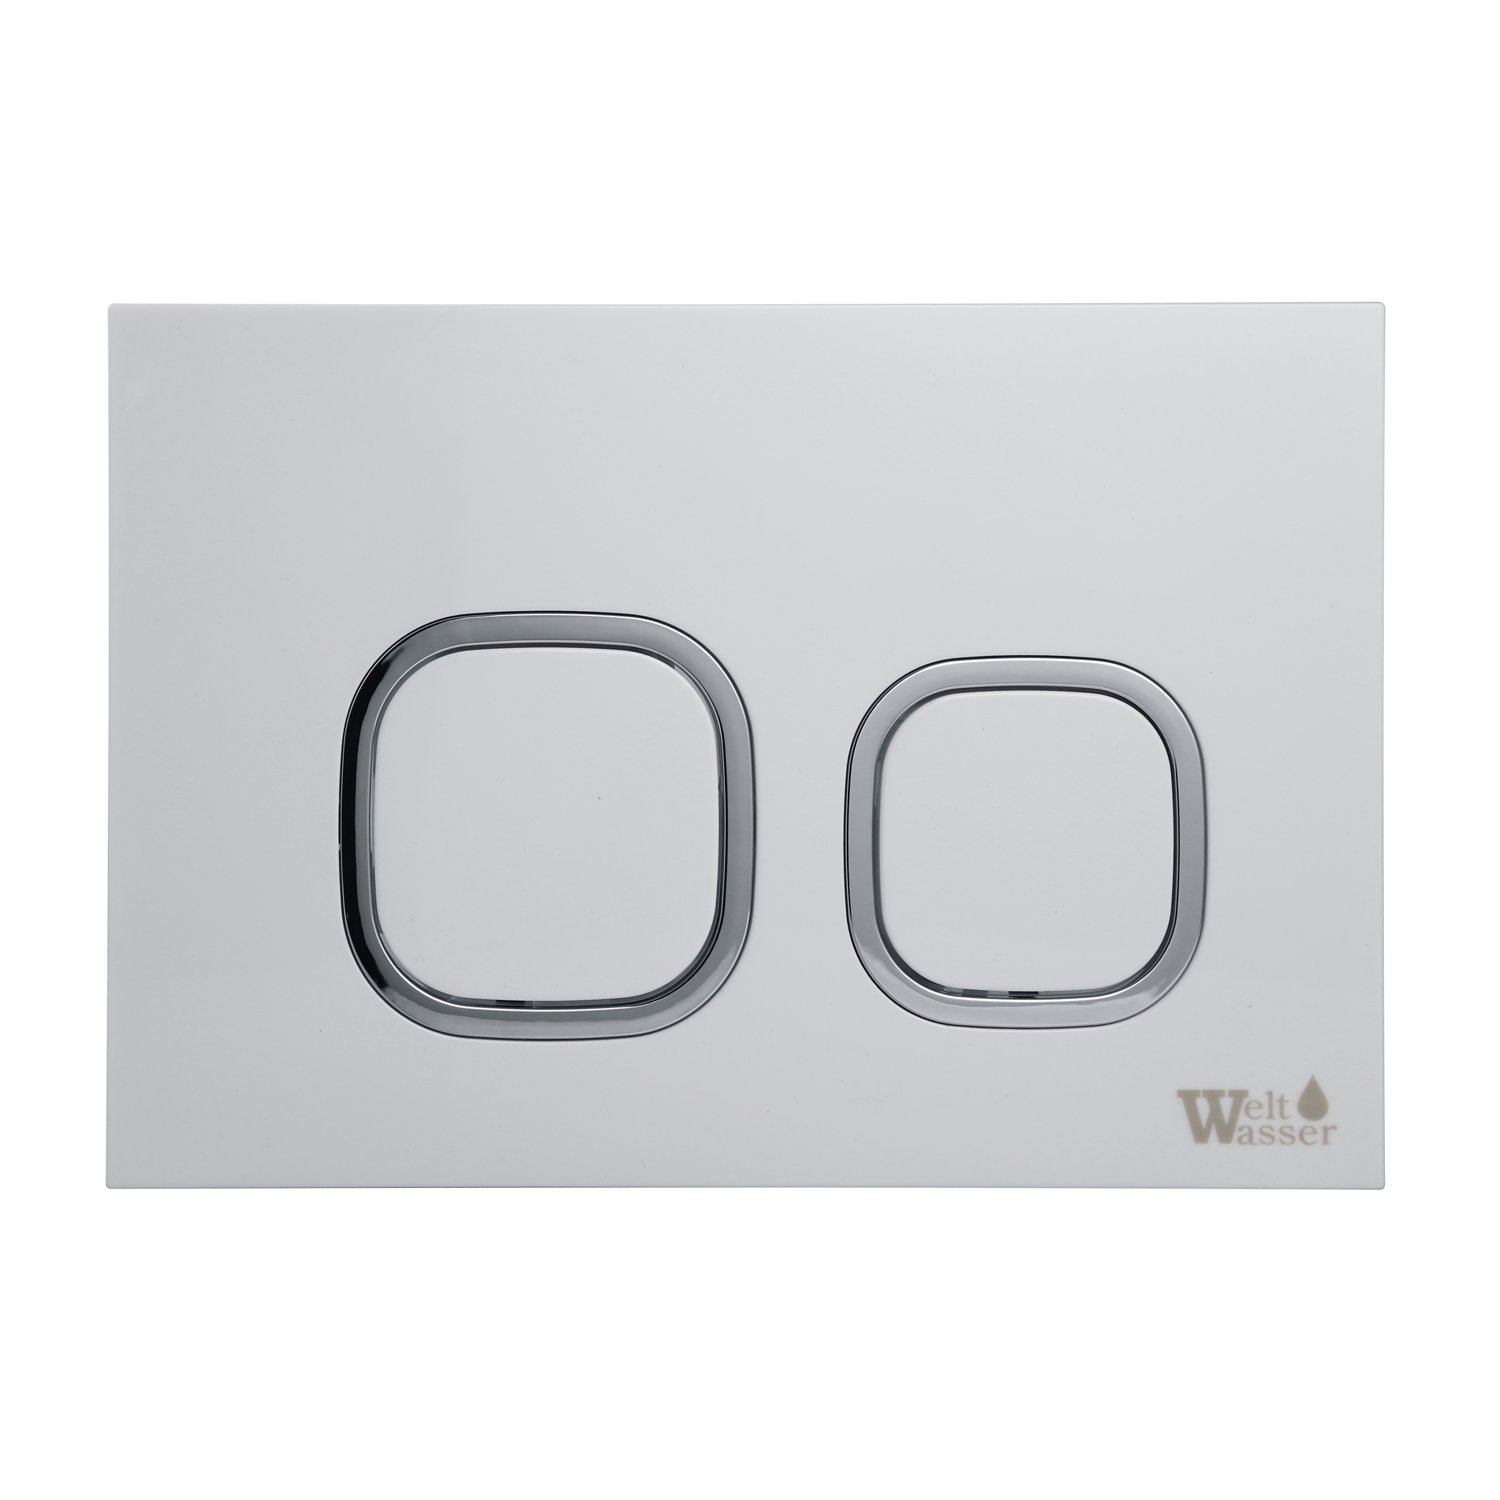 Комплект Weltwasser 10000011285 унитаза Merzbach 043 GL-WT с сиденьем микролифт и инсталляции Amberg 350 ST с белой кнопкой Amberg RD-WT - фото 1